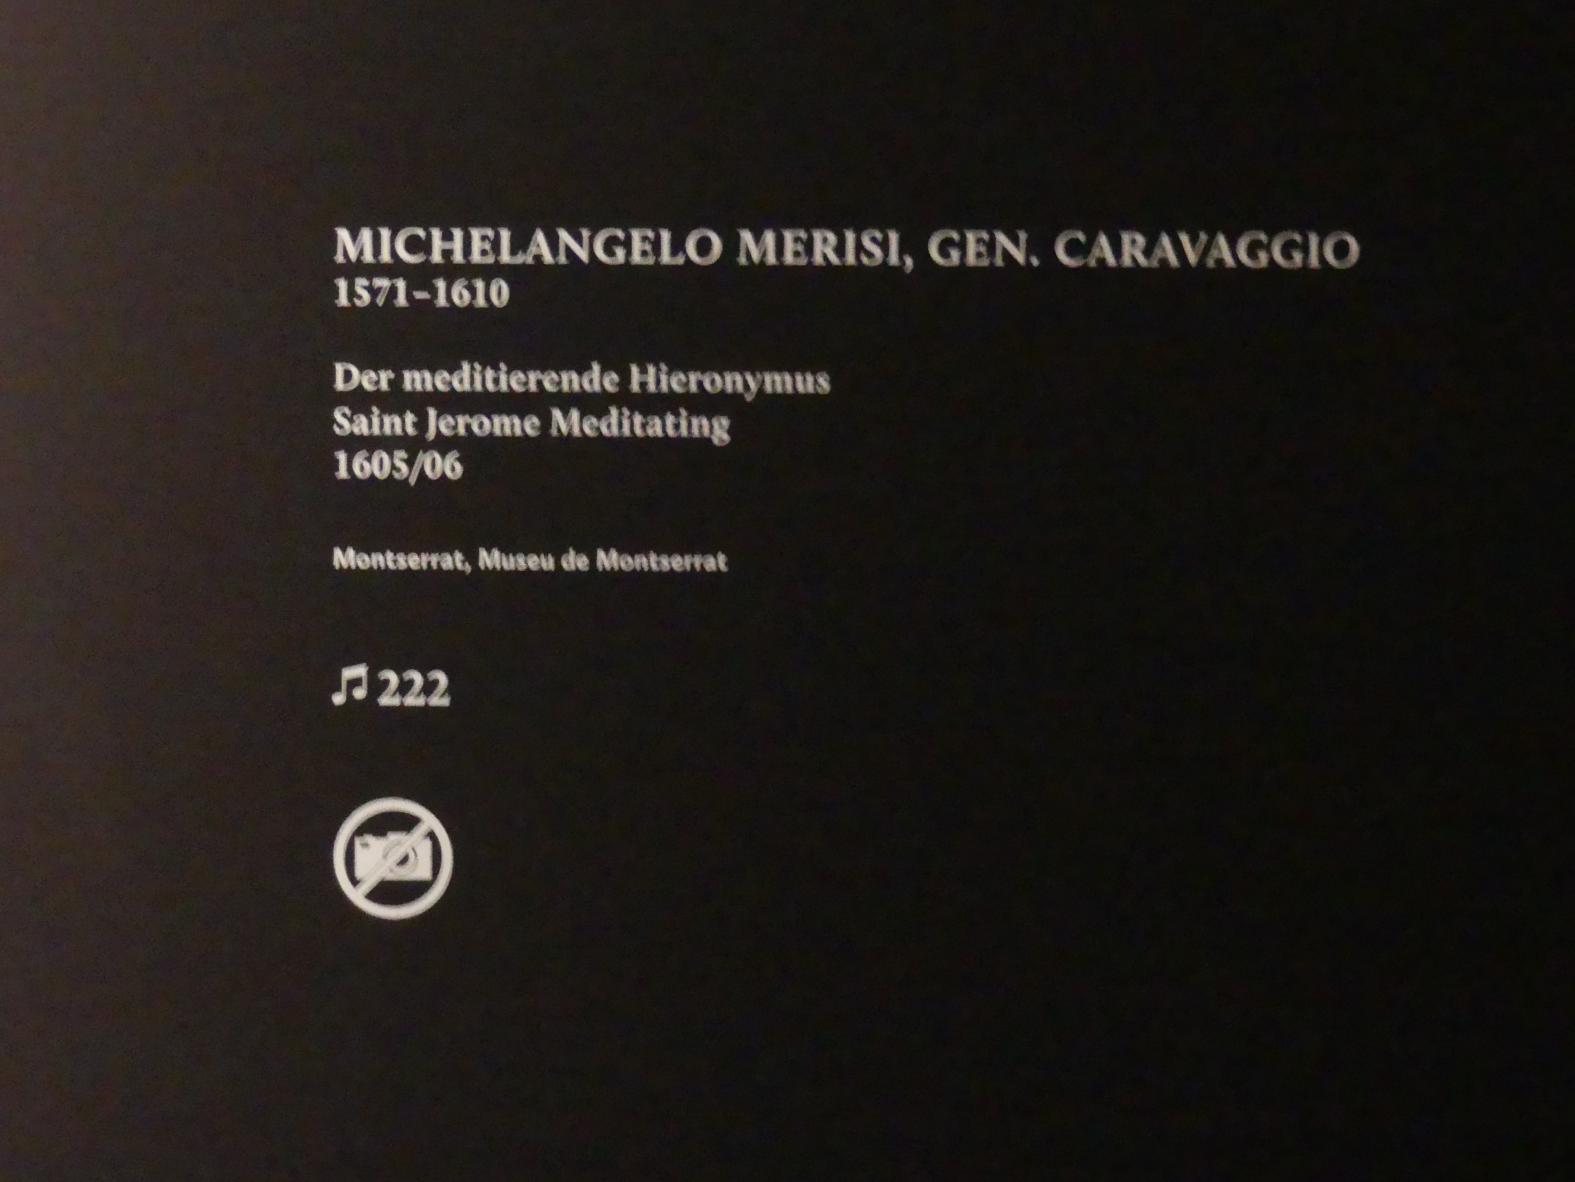 Michelangelo Merisi da Caravaggio (1594–1610), Der meditierende Hieronymus, München, Alte Pinakothek, Ausstellung "Utrecht, Caravaggio und Europa" vom 17.04.-21.07.2019, Heilige, 1605–1606